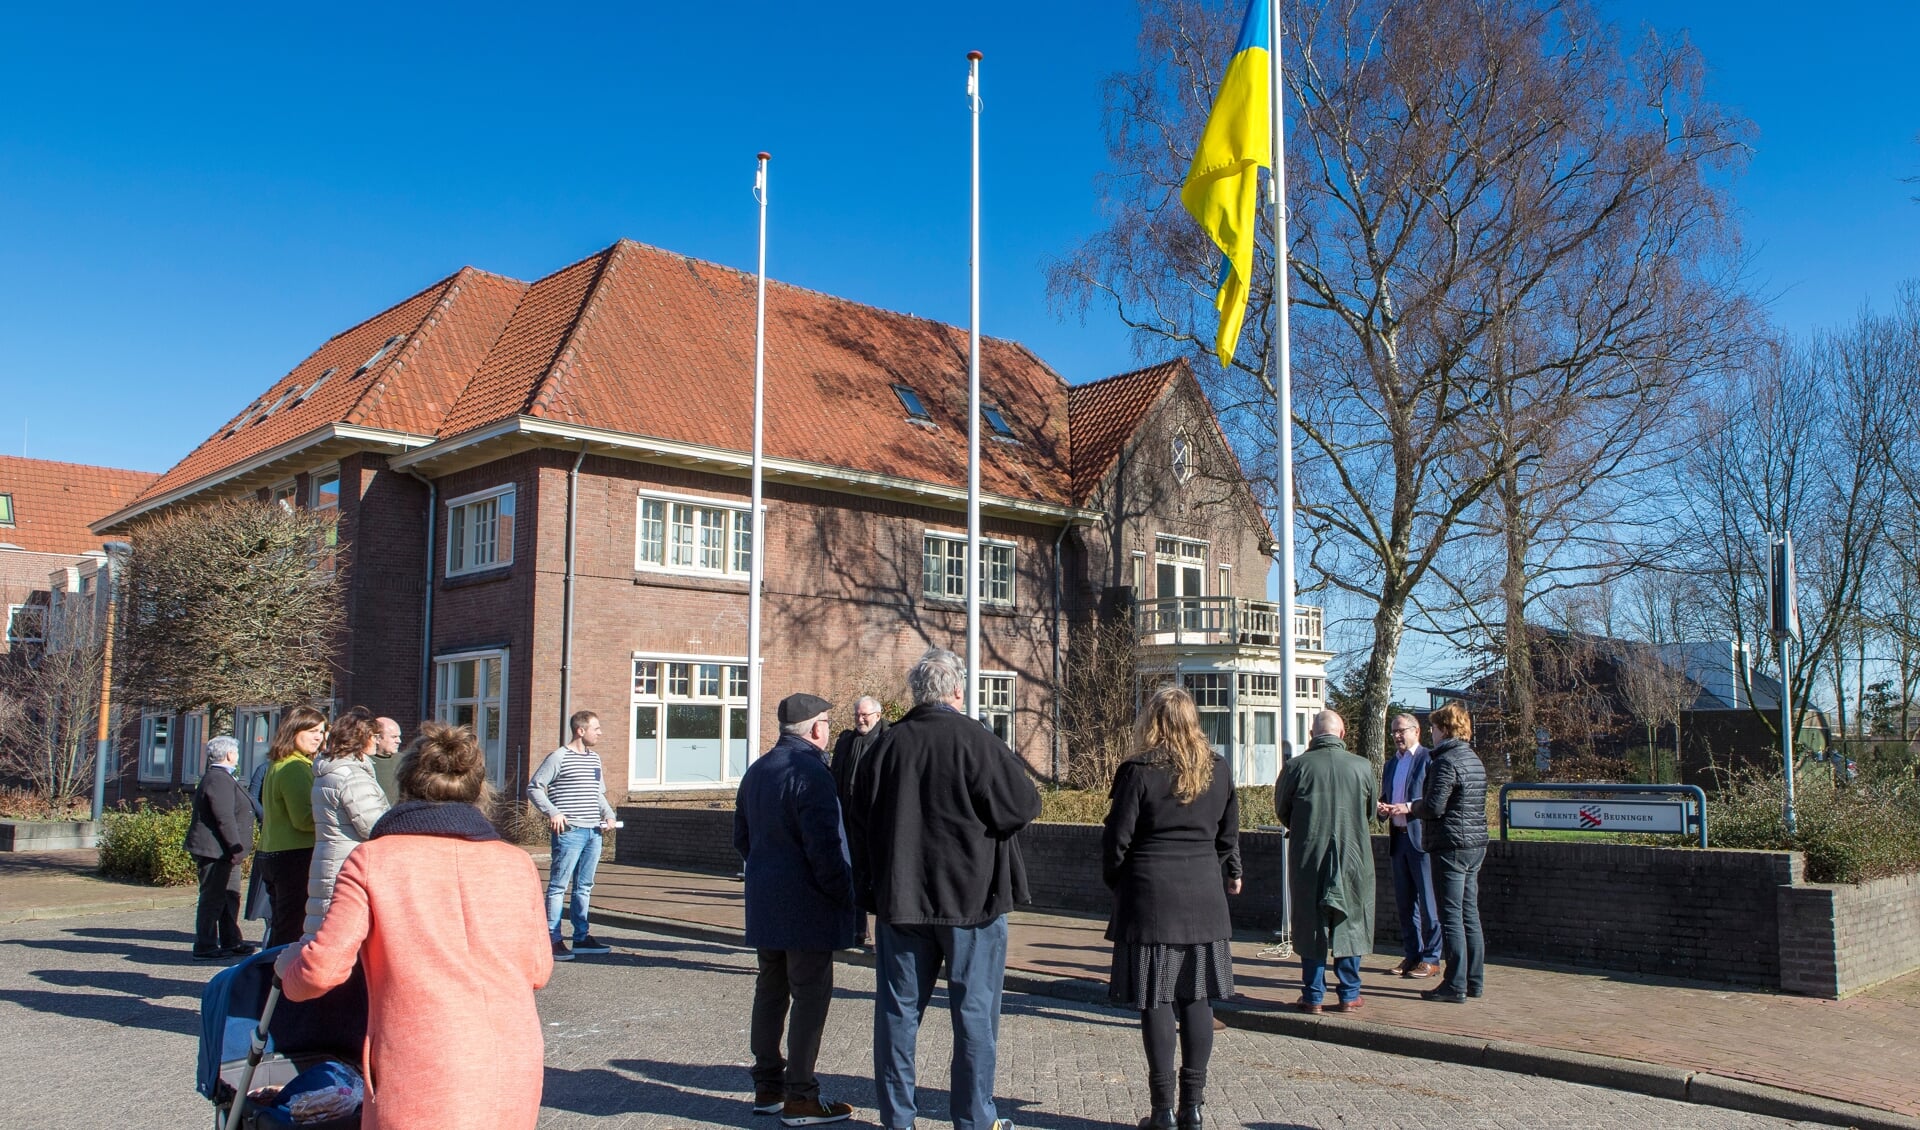 Vlag van Oekraïne wordt gehesen bij gemeentehuis Beuningen.